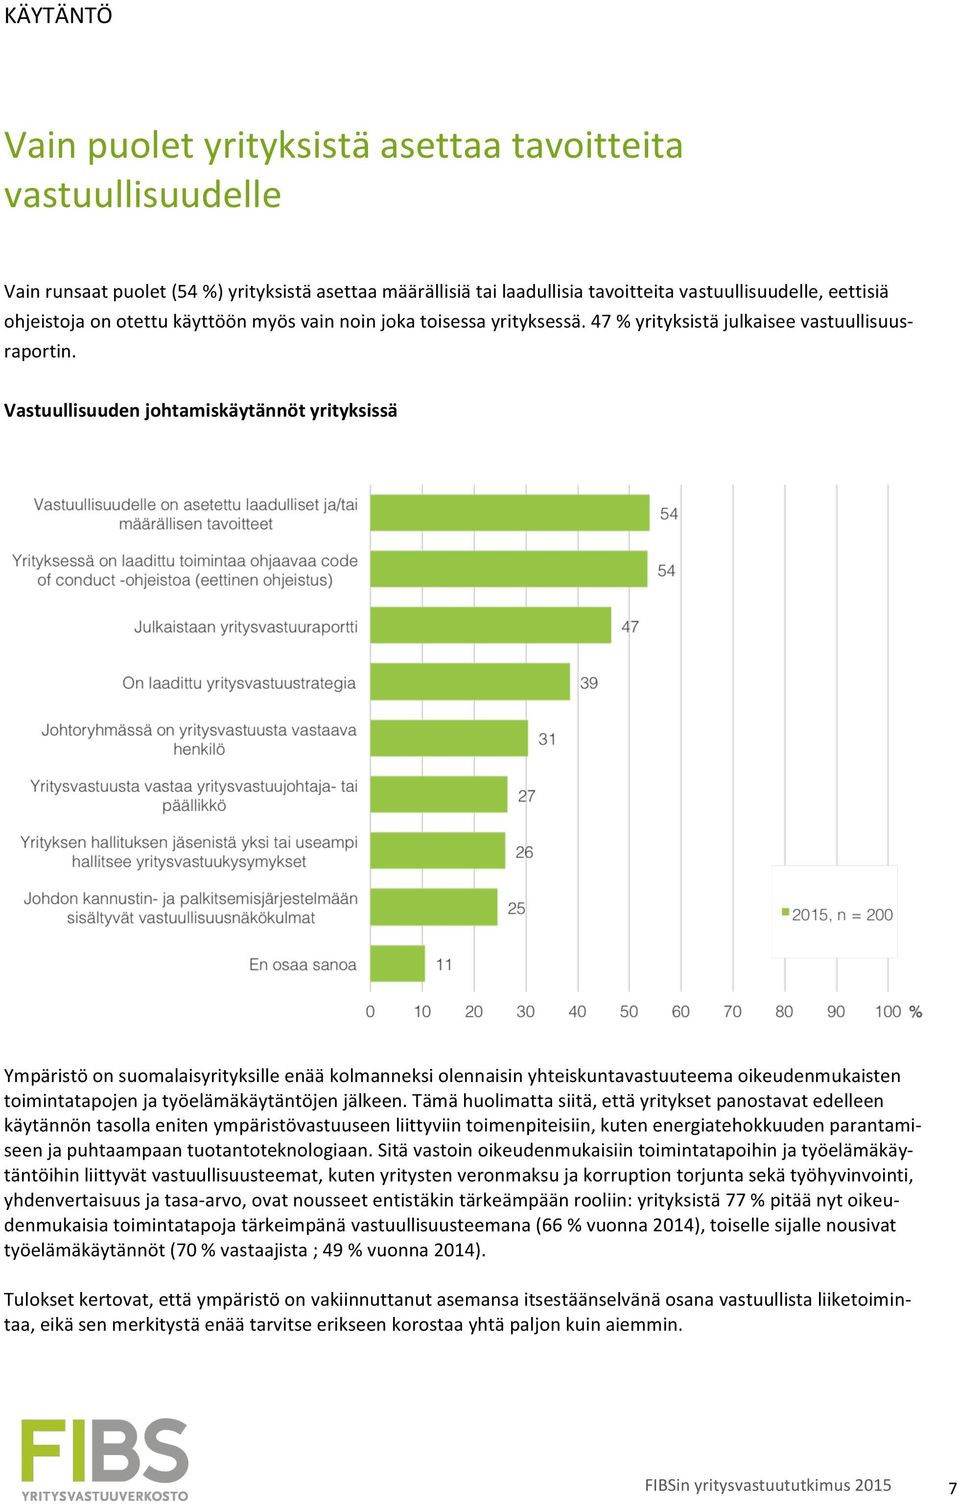 Vastuullisuuden johtamiskäytännöt yrityksissä Ympäristö on suomalaisyrityksille enää kolmanneksi olennaisin yhteiskuntavastuuteema oikeudenmukaisten toimintatapojen ja työelämäkäytäntöjen jälkeen.